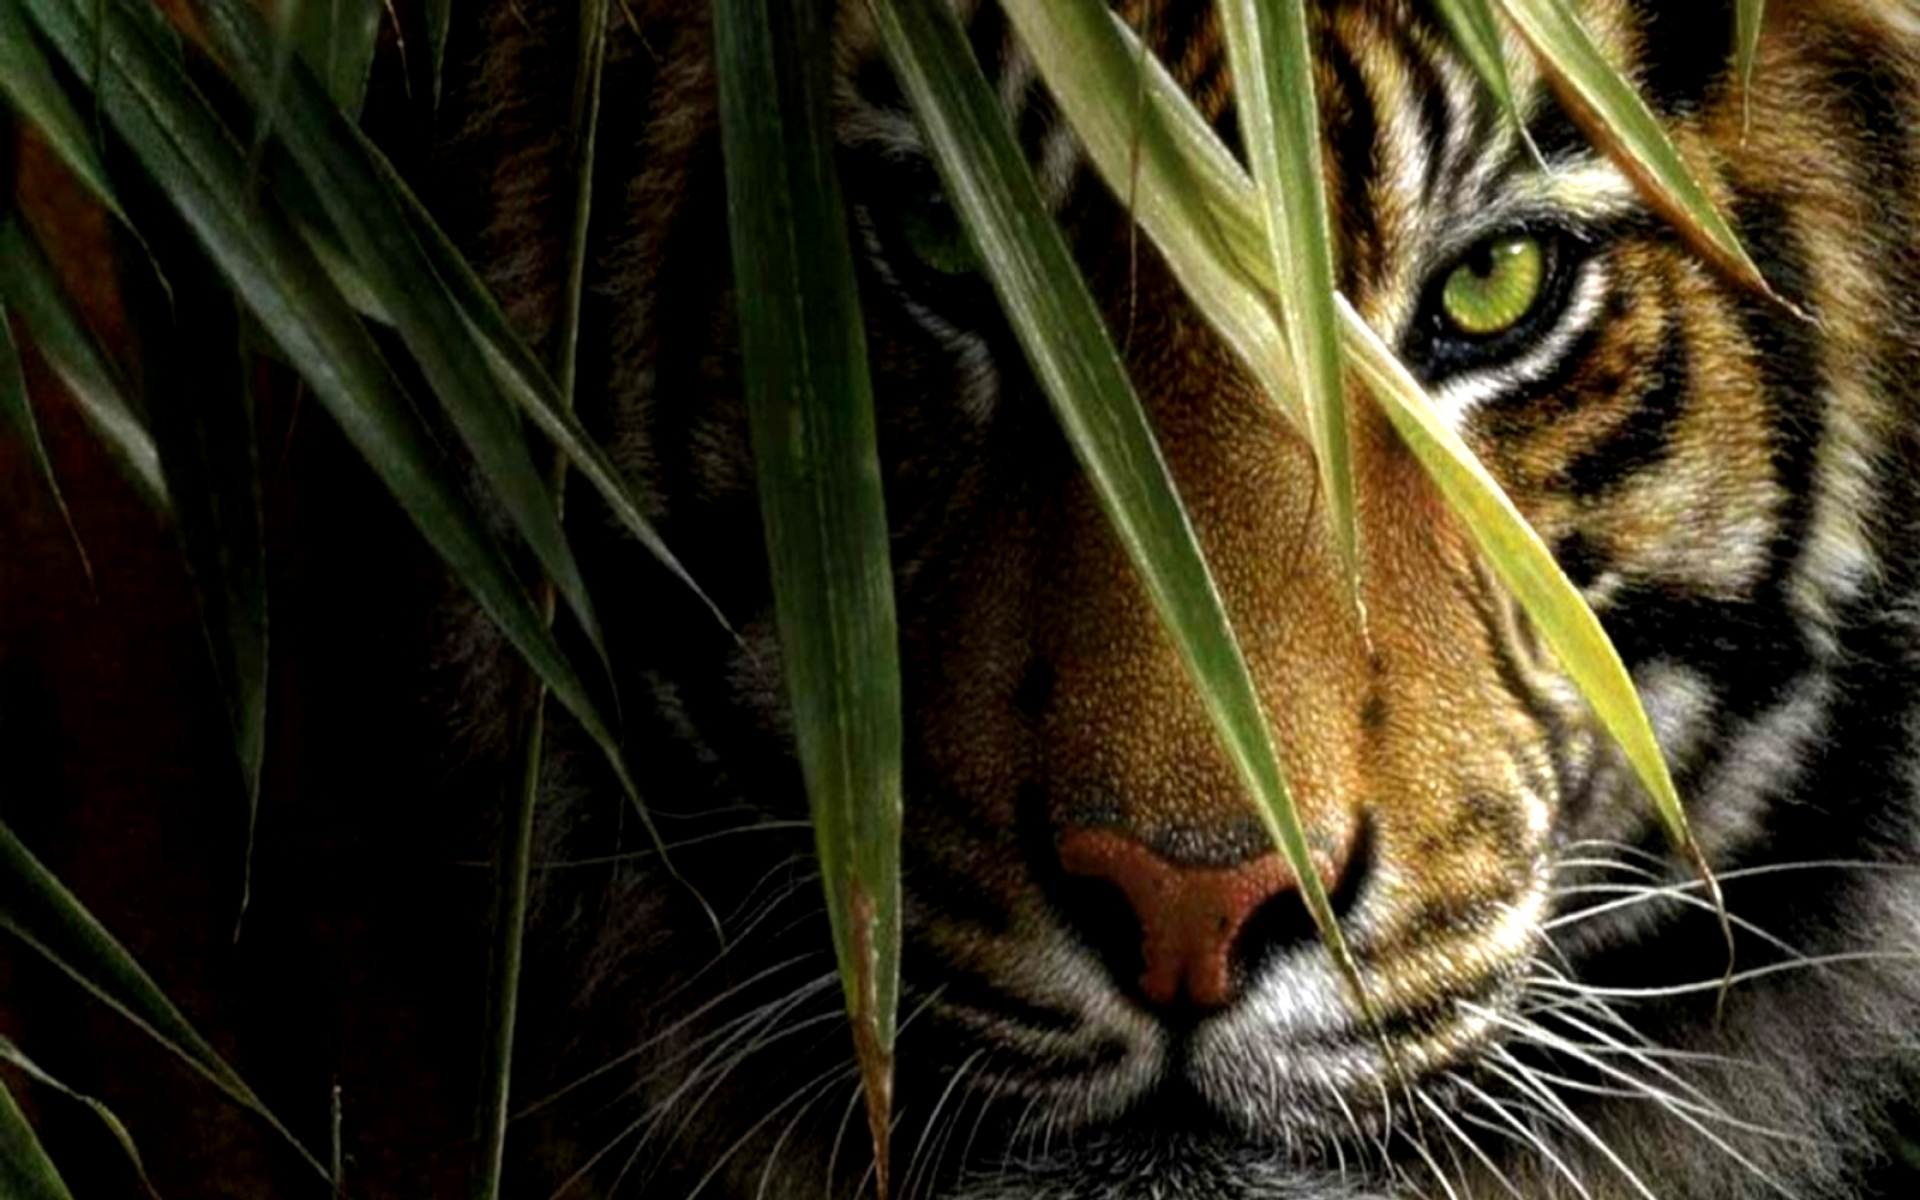 descarga gratuita de fondo de pantalla de tigre,bigotes,tigre de bengala,felidae,fauna silvestre,gato